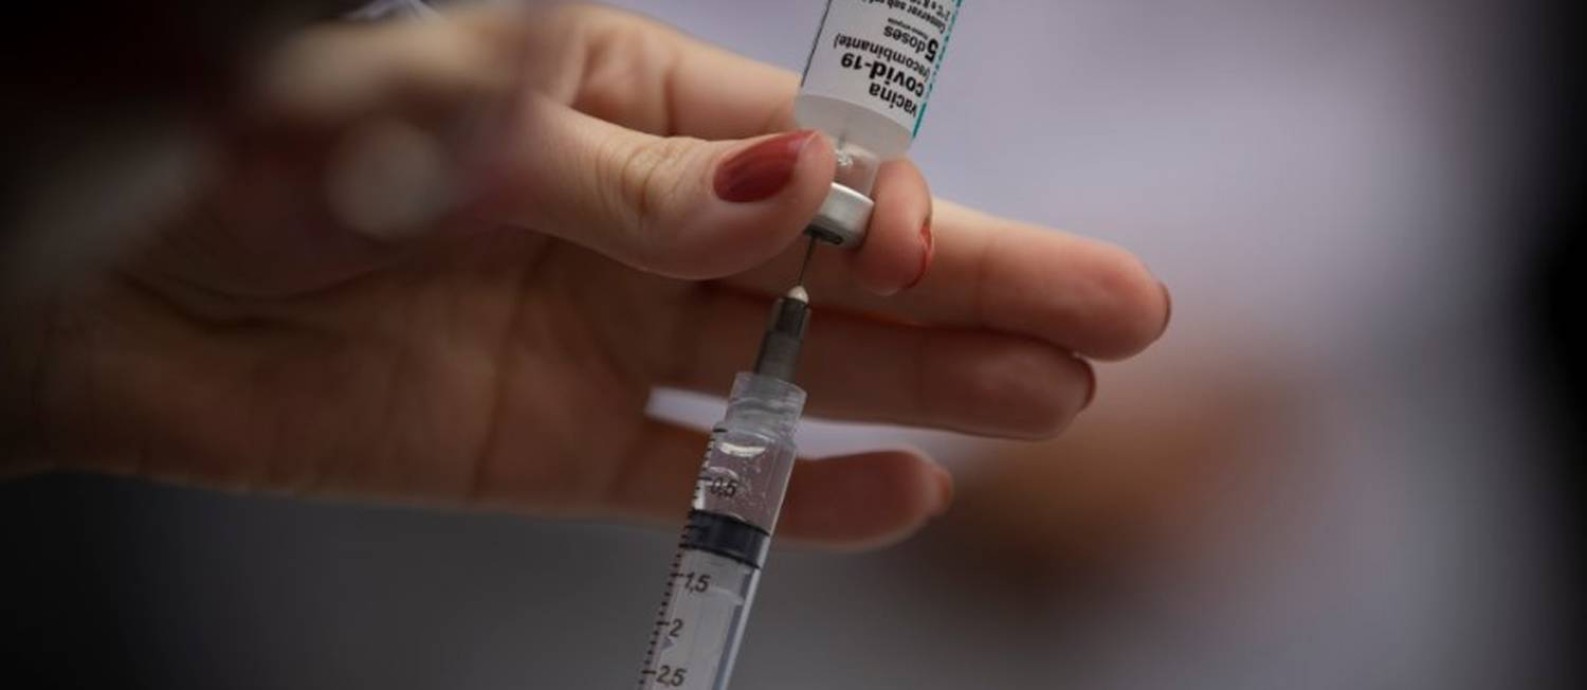 Vacina contra Covid-19 é preparada para aplicação em posto de saúde Foto: Márcia Foletto / Agência O Globo